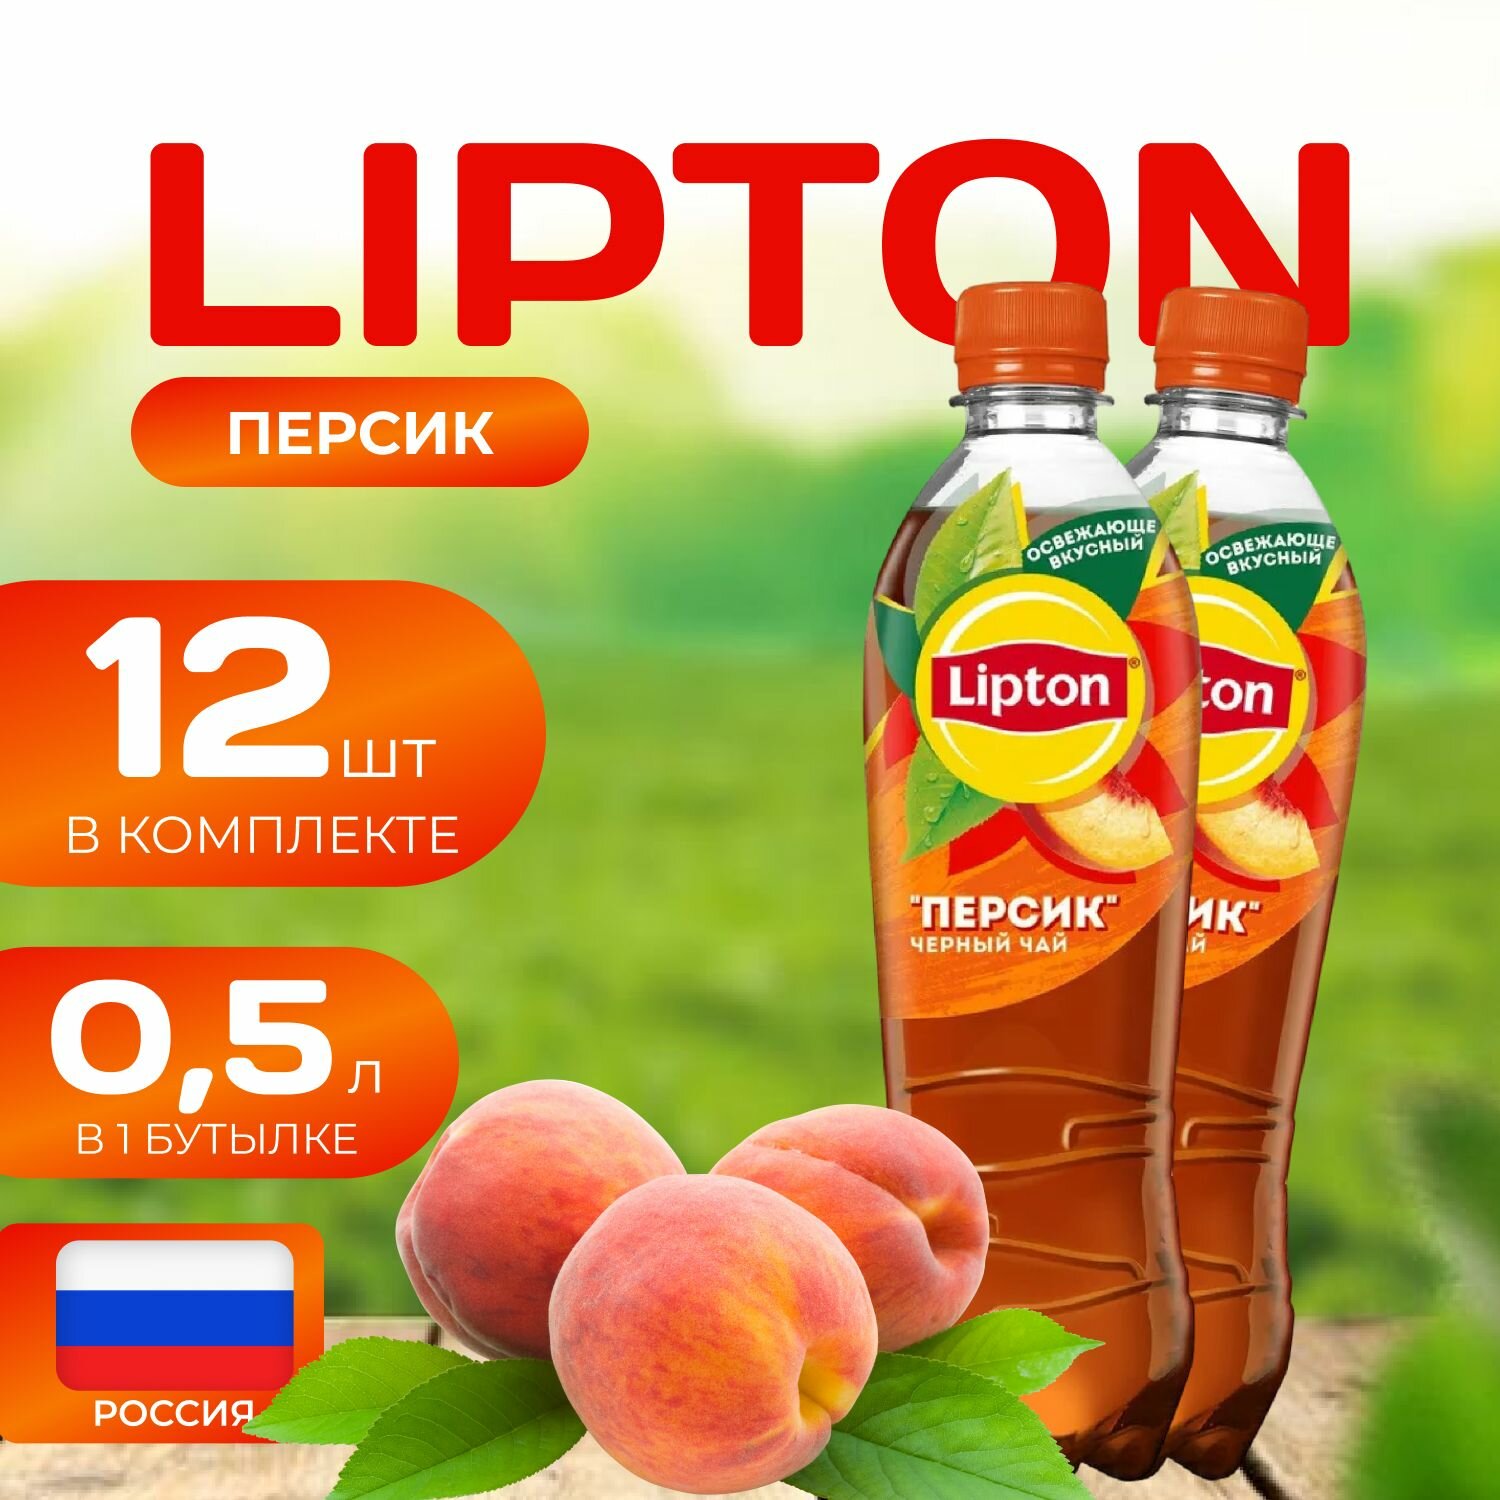 Липтон Холодный черный чай "Персик" 12 шт. по 0.5л. Lipton персик